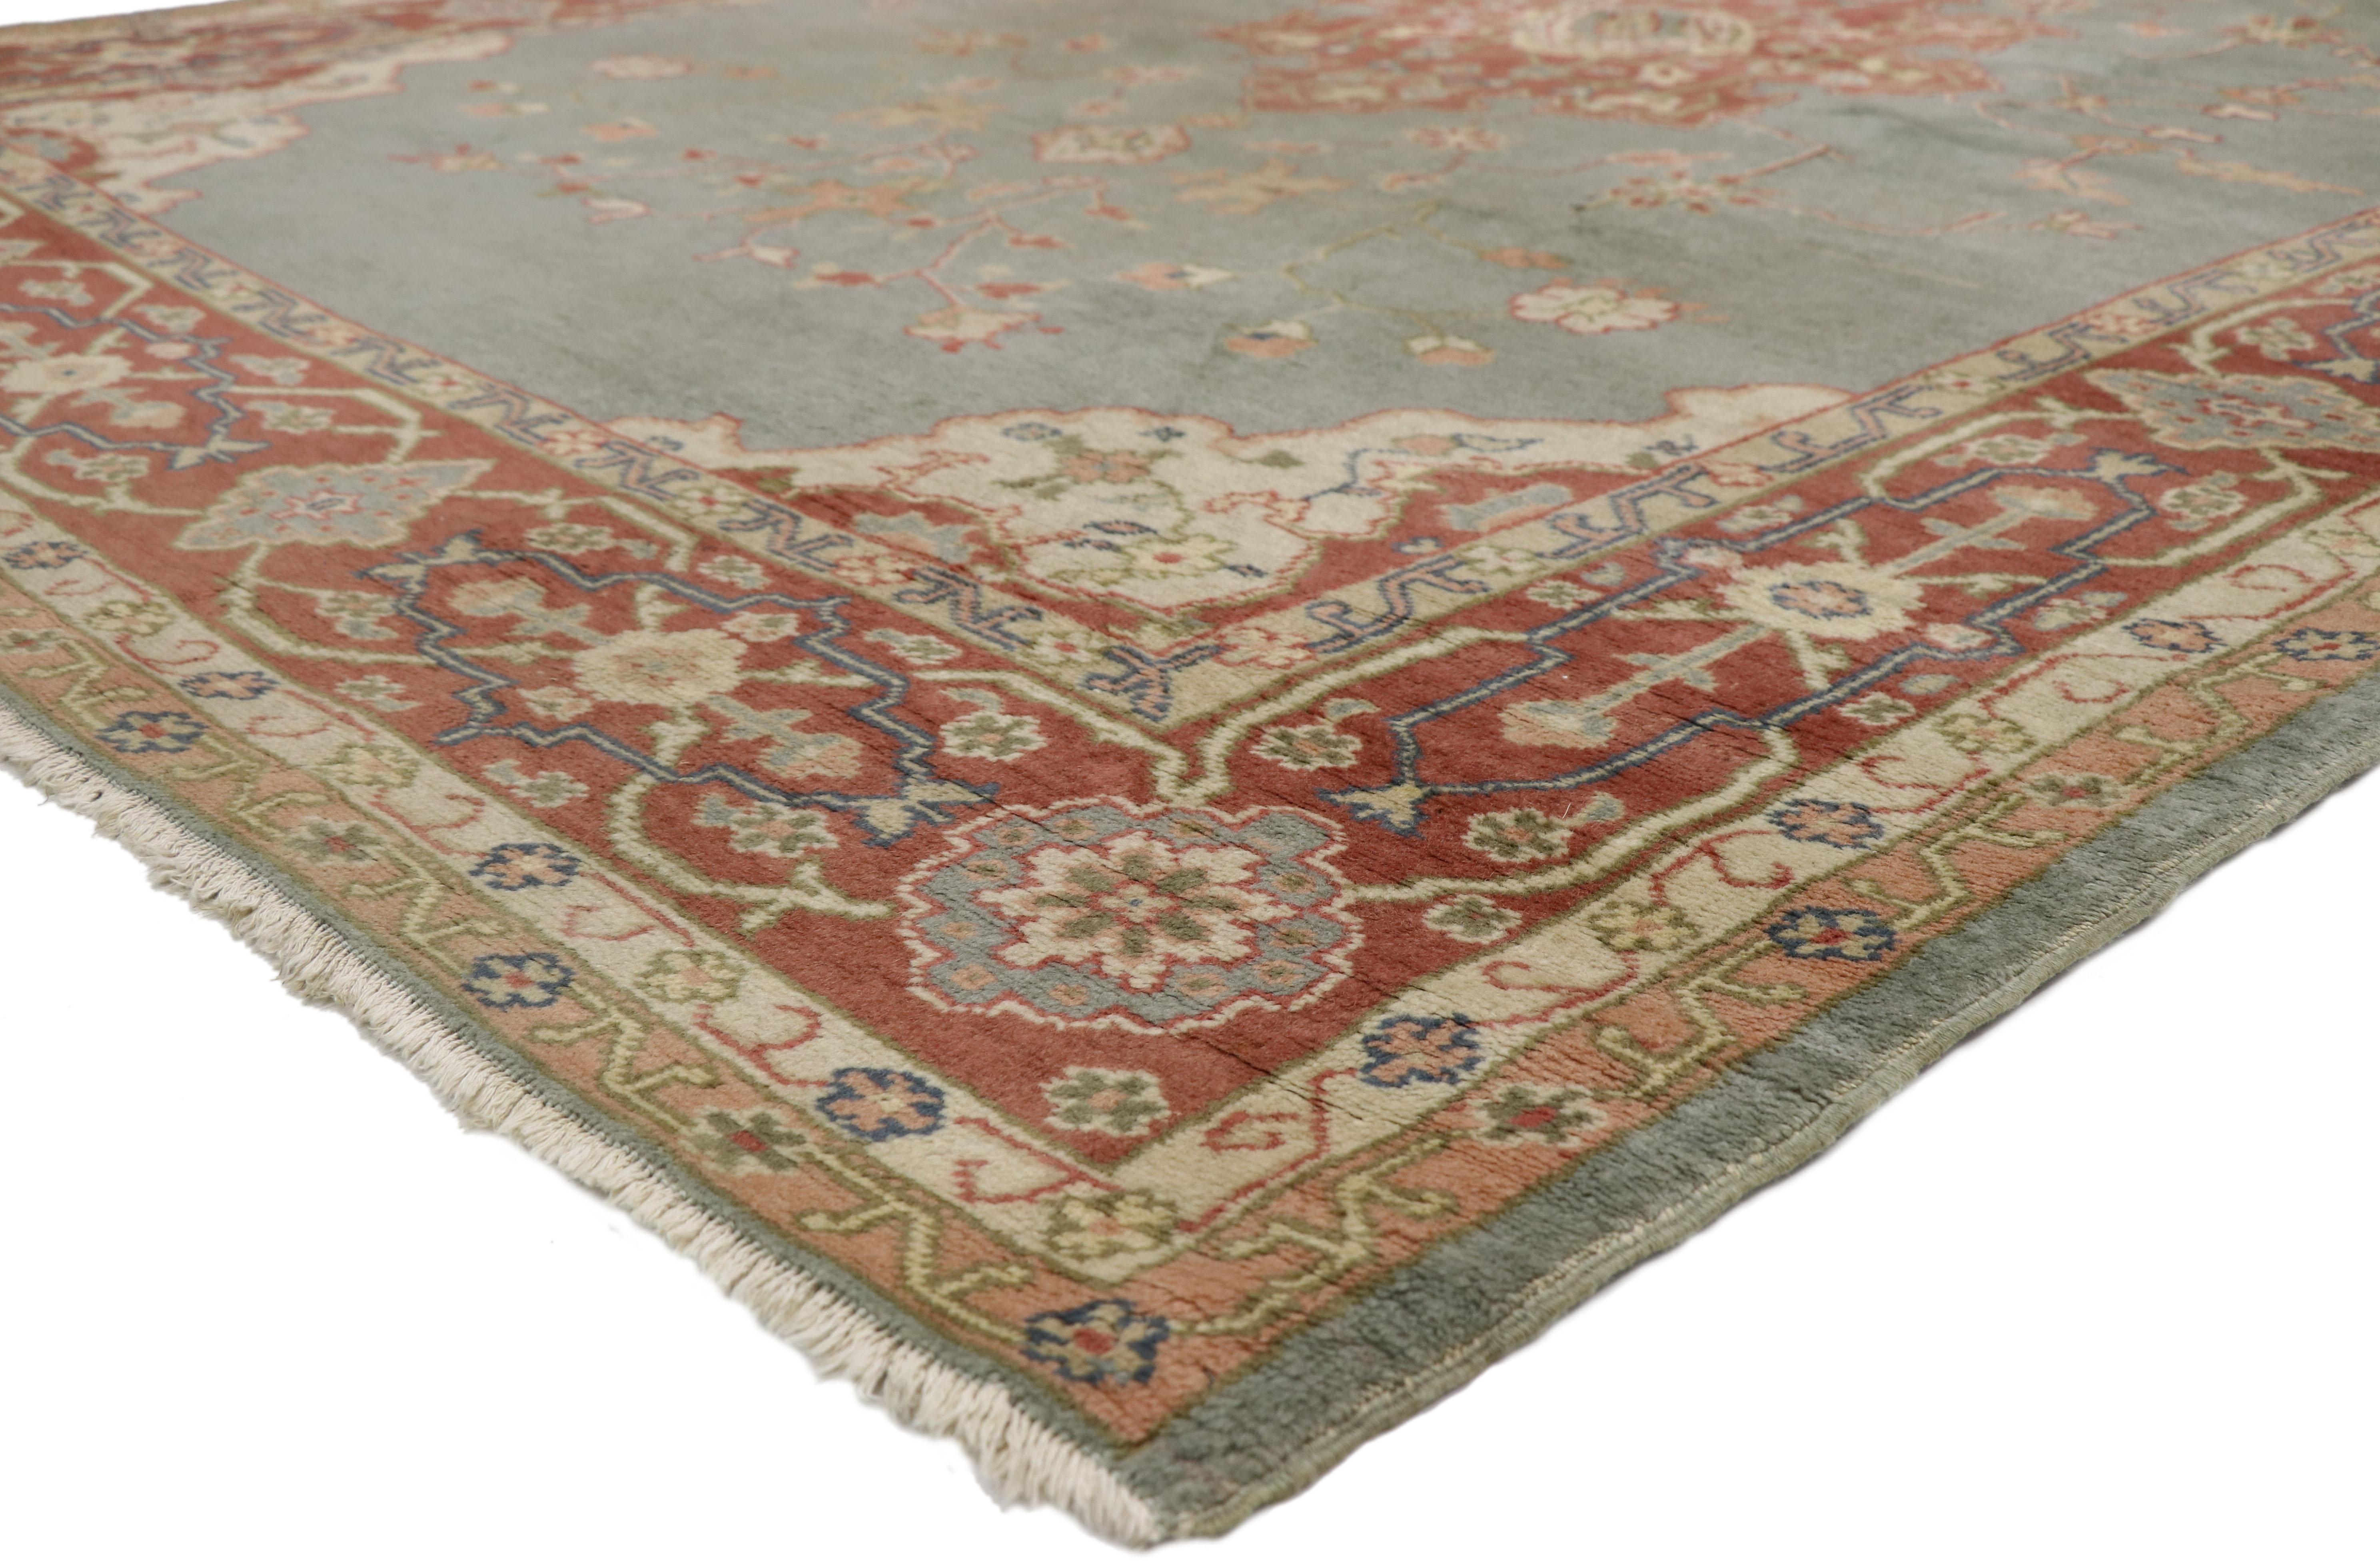 77357, tapis turc antique Oushak en détresse de style rustique géorgien et Antiques. Une belle combinaison de tons chauds de terre cuite et de teintes douces de gris bleuté, ce tapis Oushak turc antique en laine nouée à la main crée une ambiance